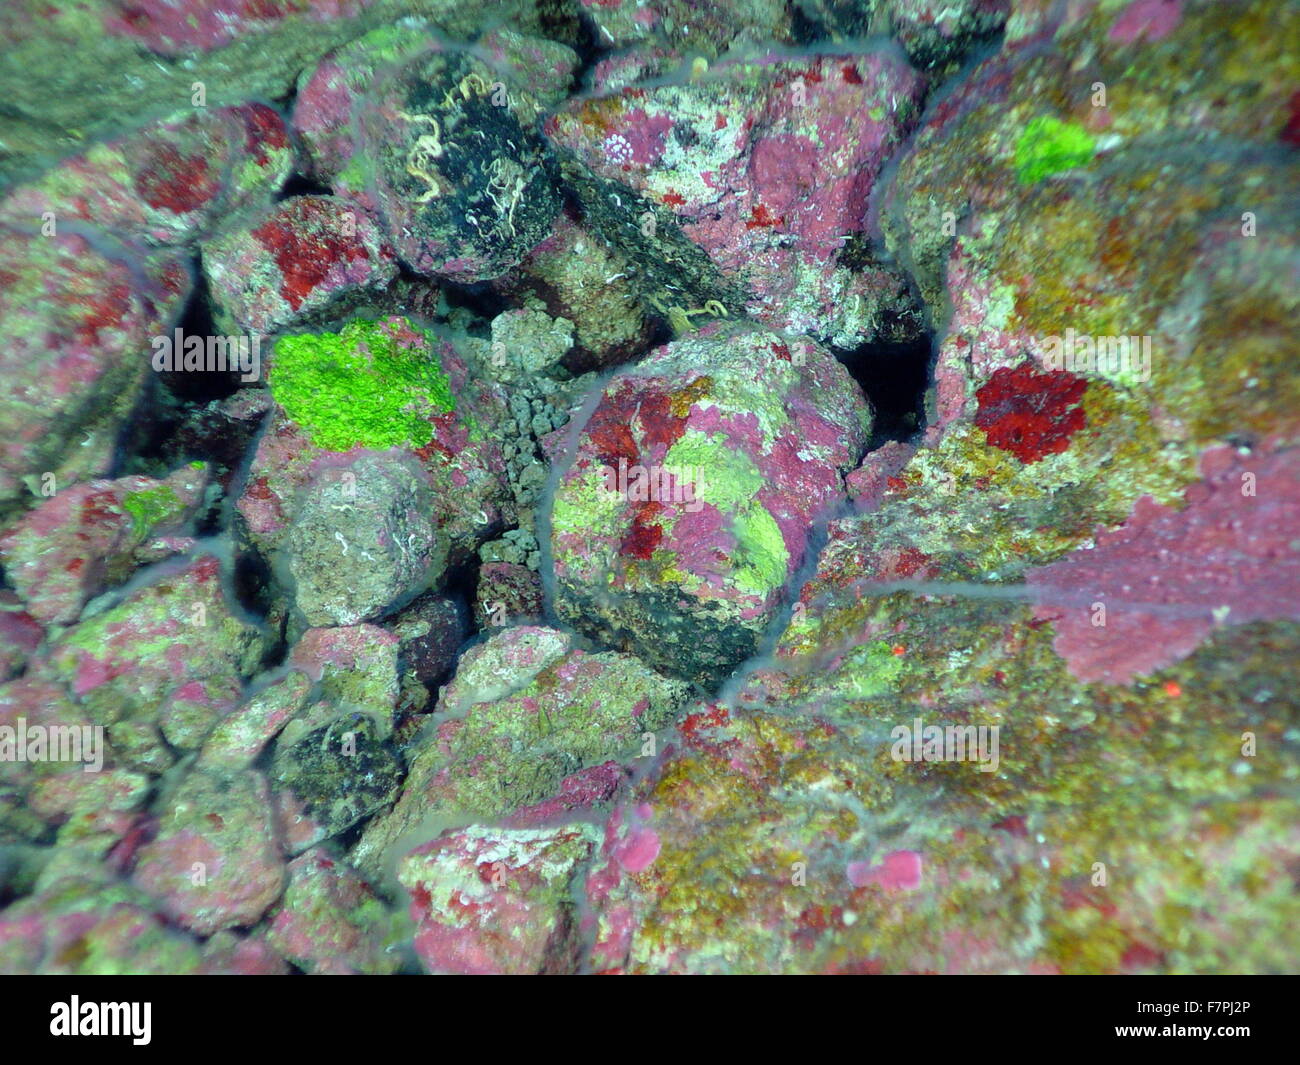 Le patch di rosse incrostanti e alghe verdi si trovano sotto filamentosi stuoie batteriche su superfici di roccia. Mariana Arc regione, Oceano Pacifico occidentale. Datata 2004 Foto Stock